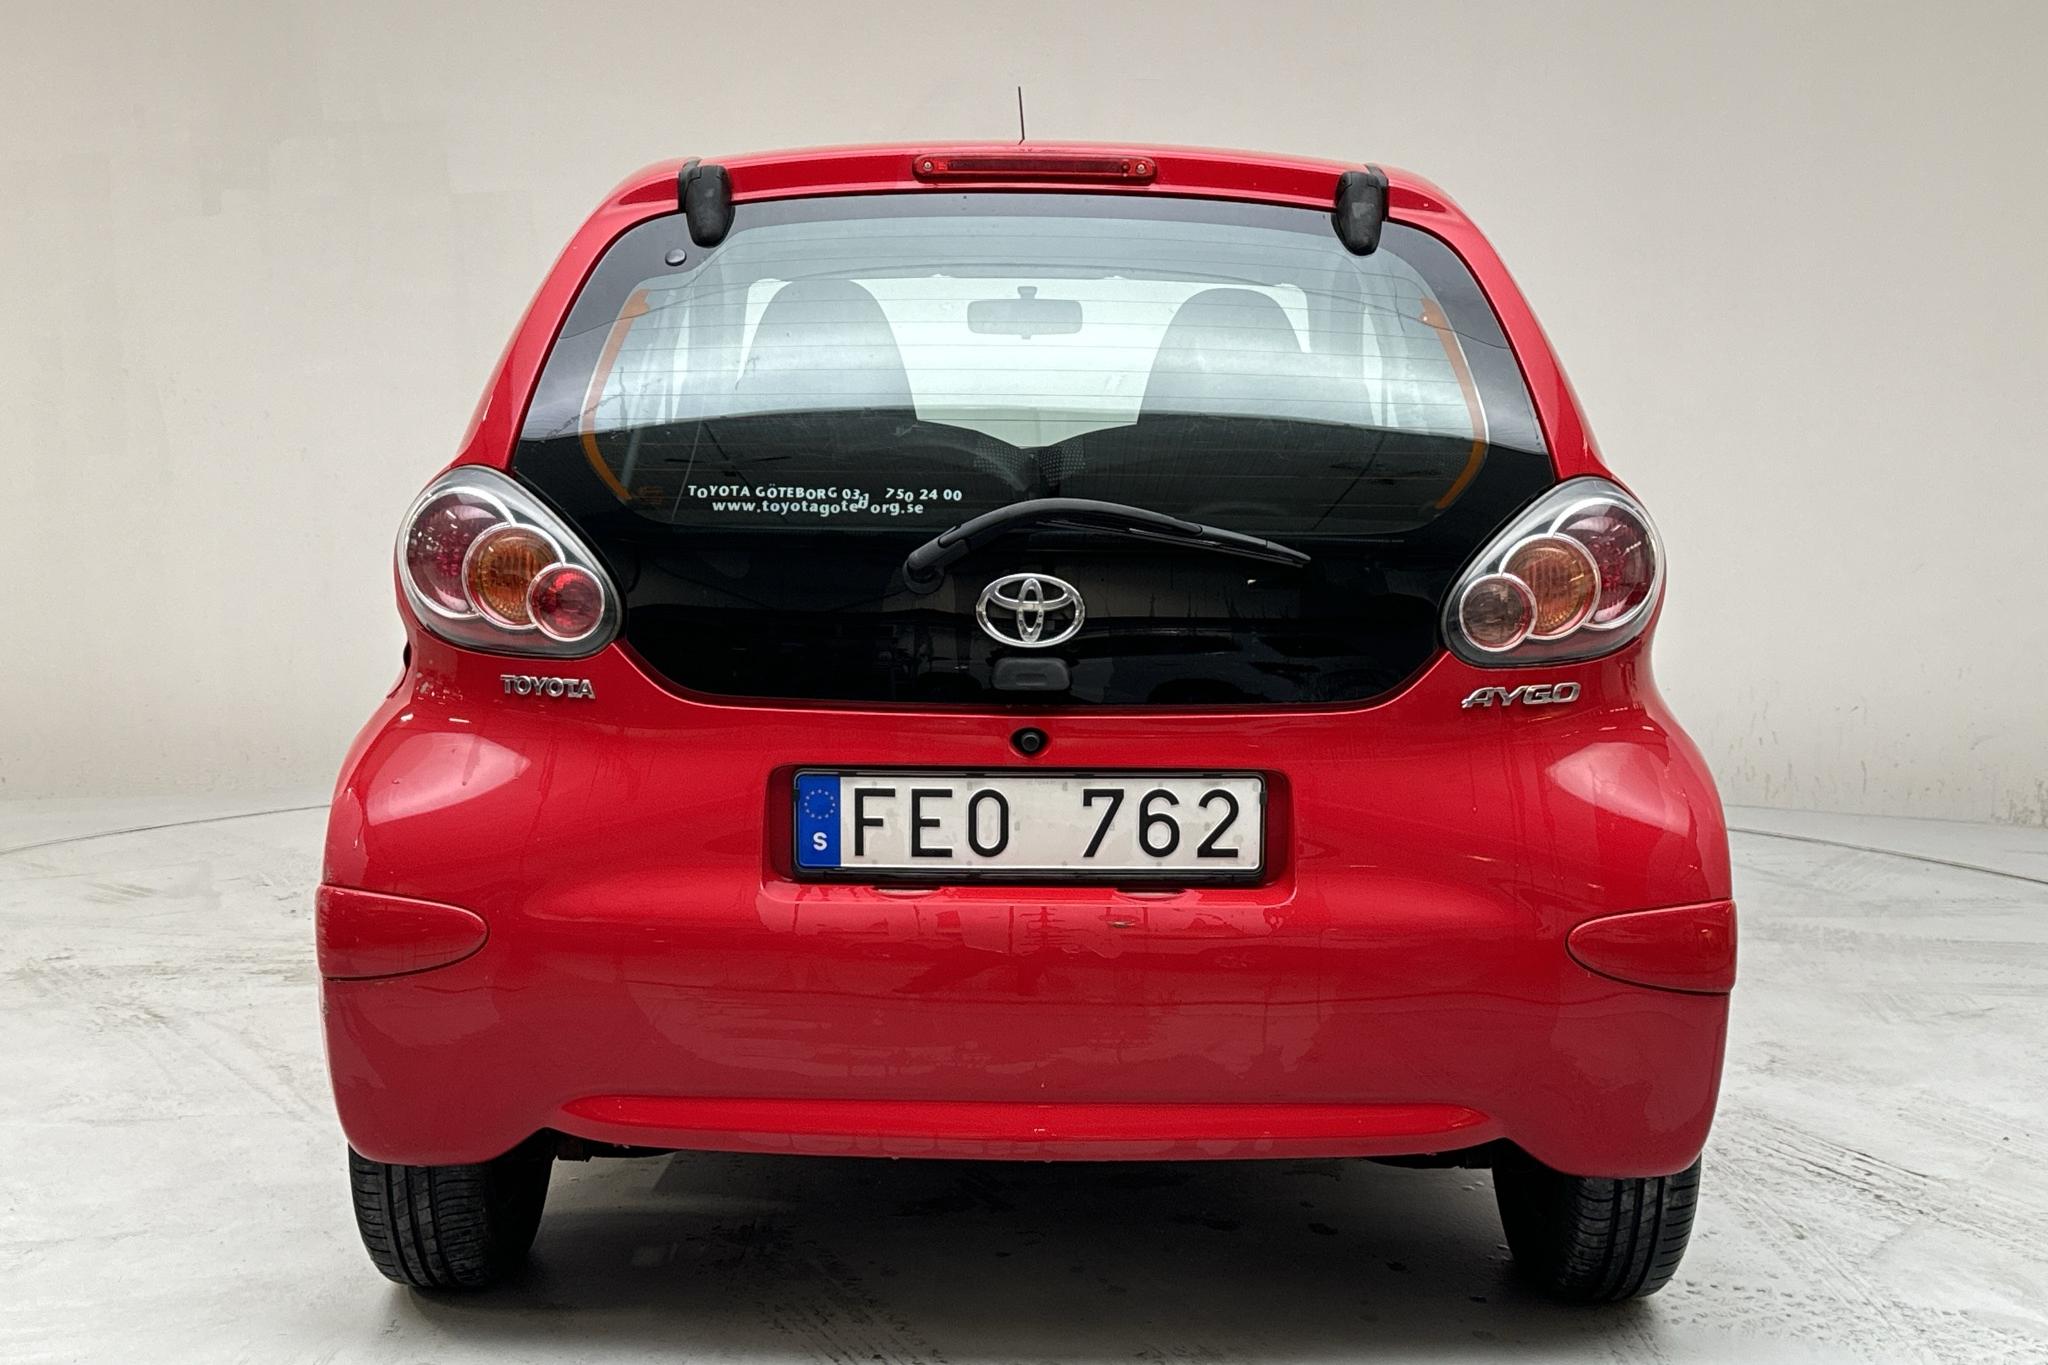 Toyota Aygo 1.0 VVT-i 5dr (68hk) - 11 887 mil - Manuell - röd - 2010